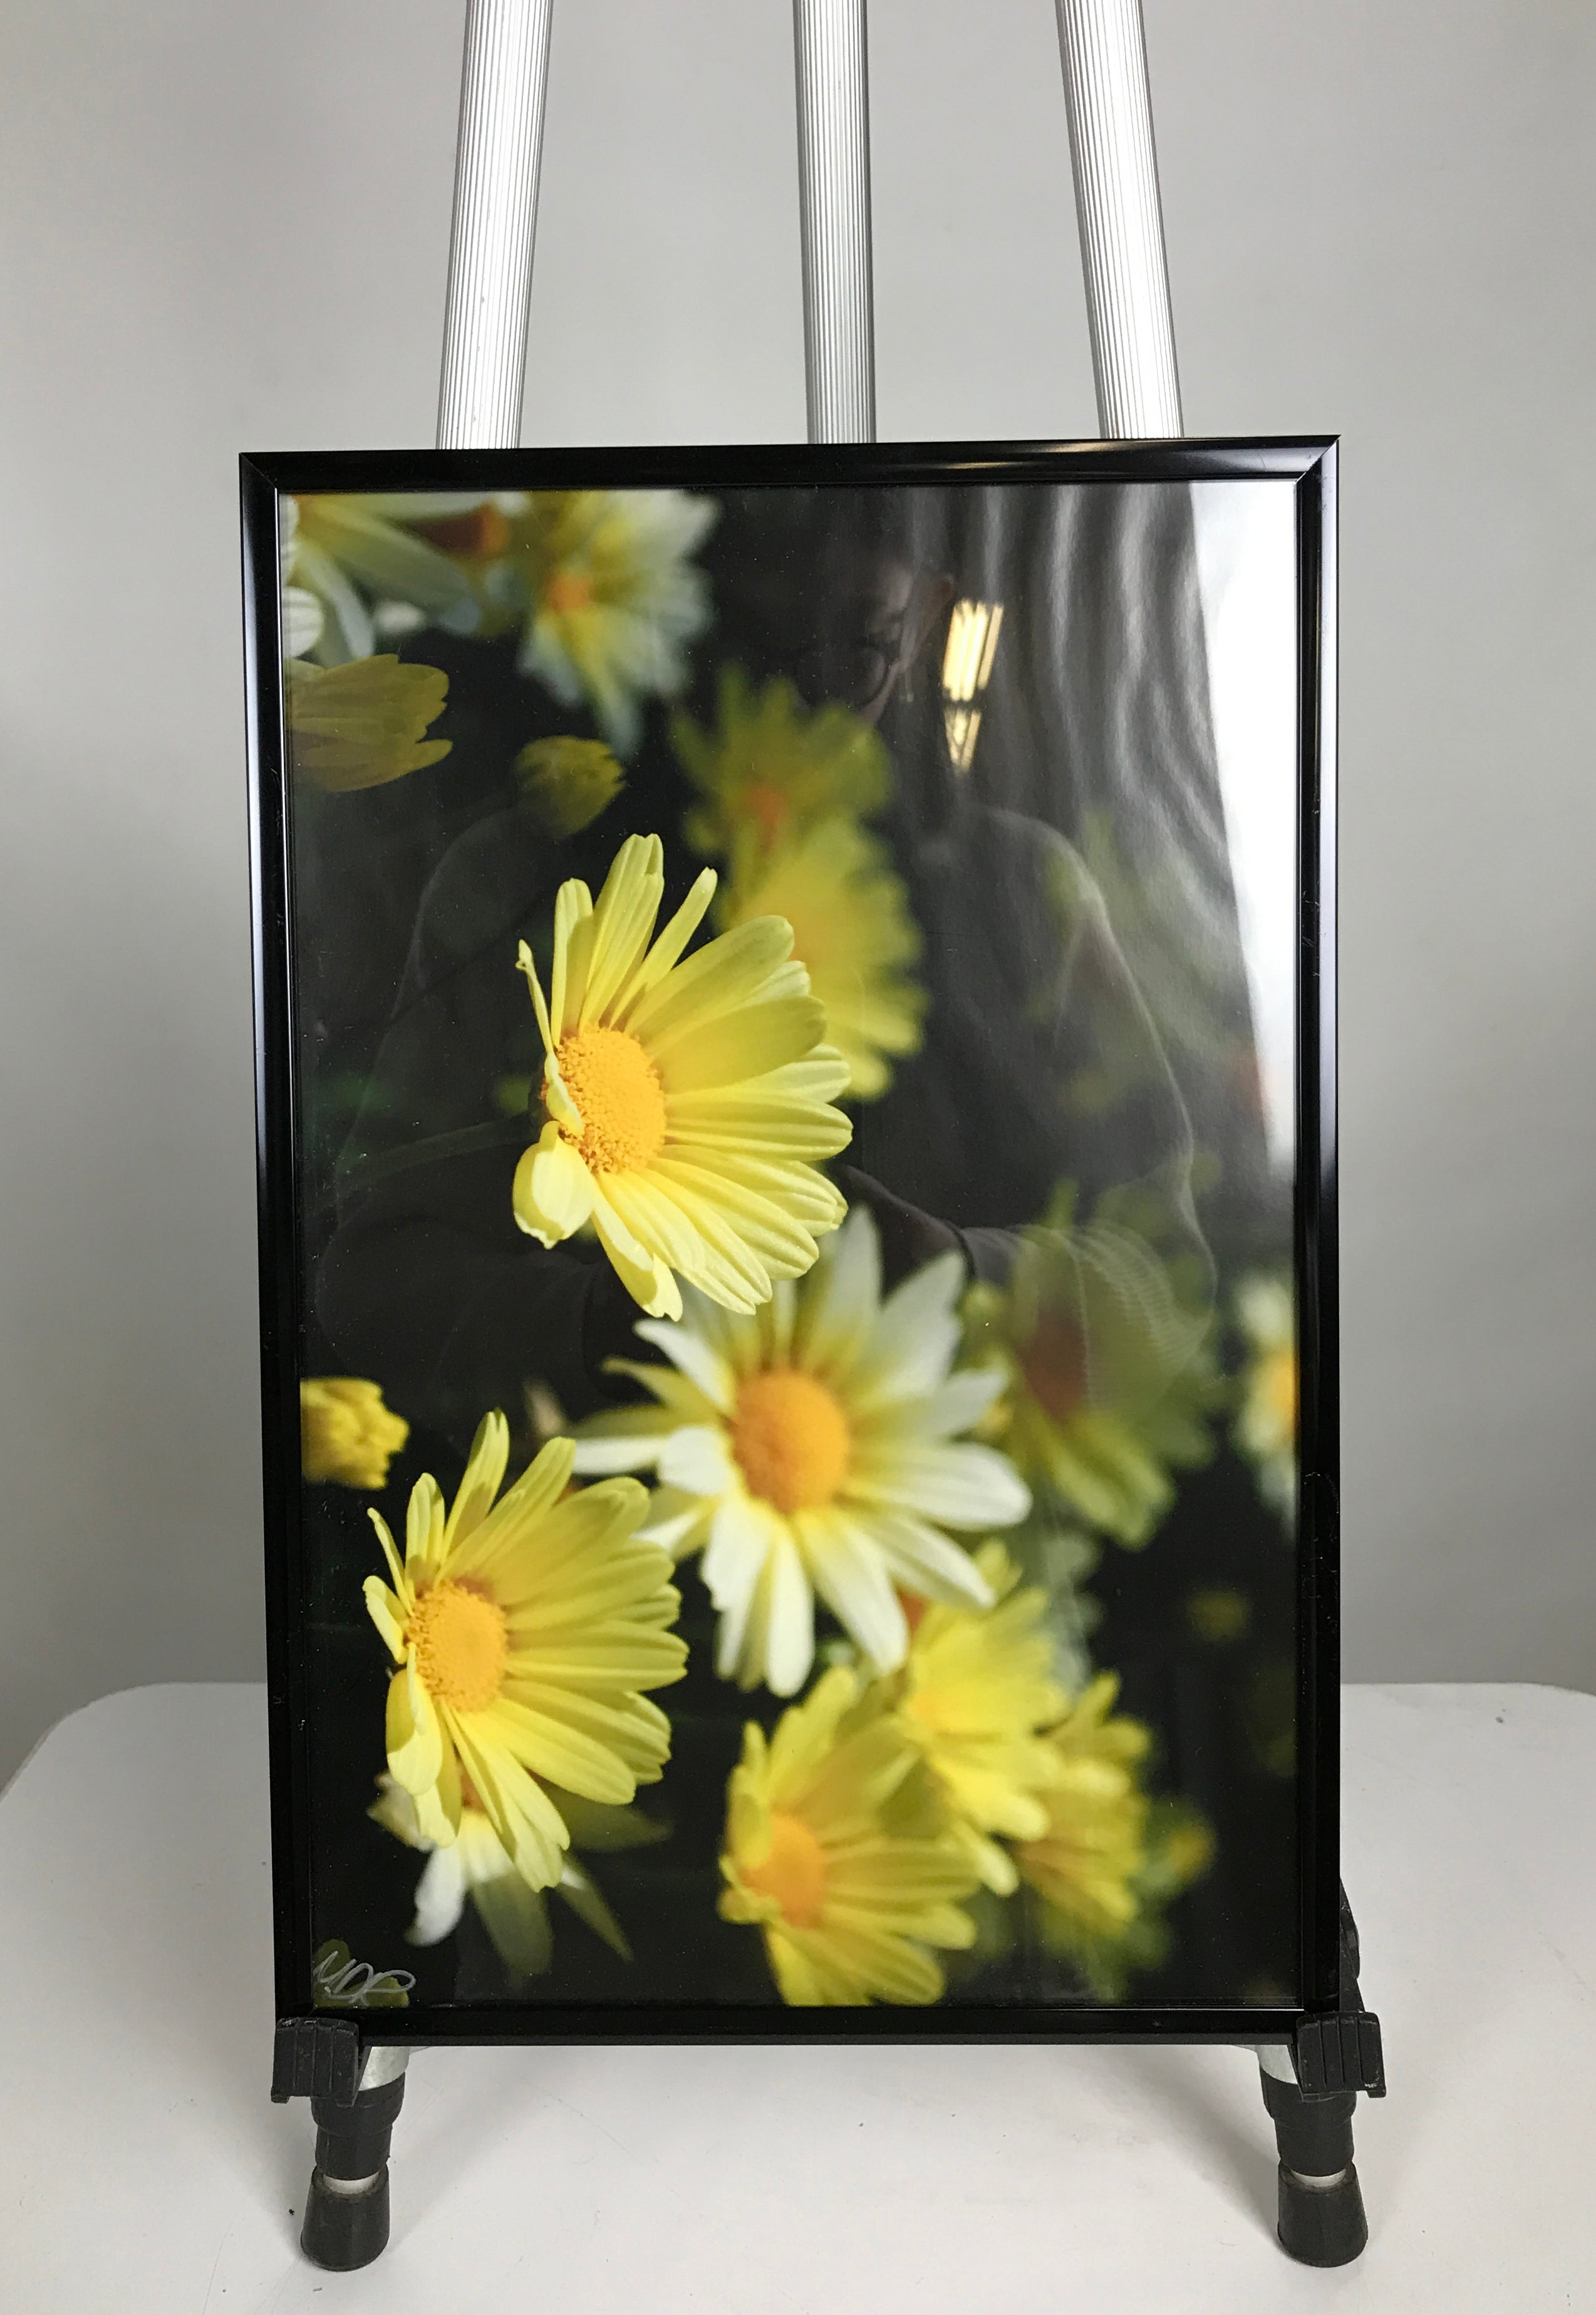 Black Framed Flower Pictures B